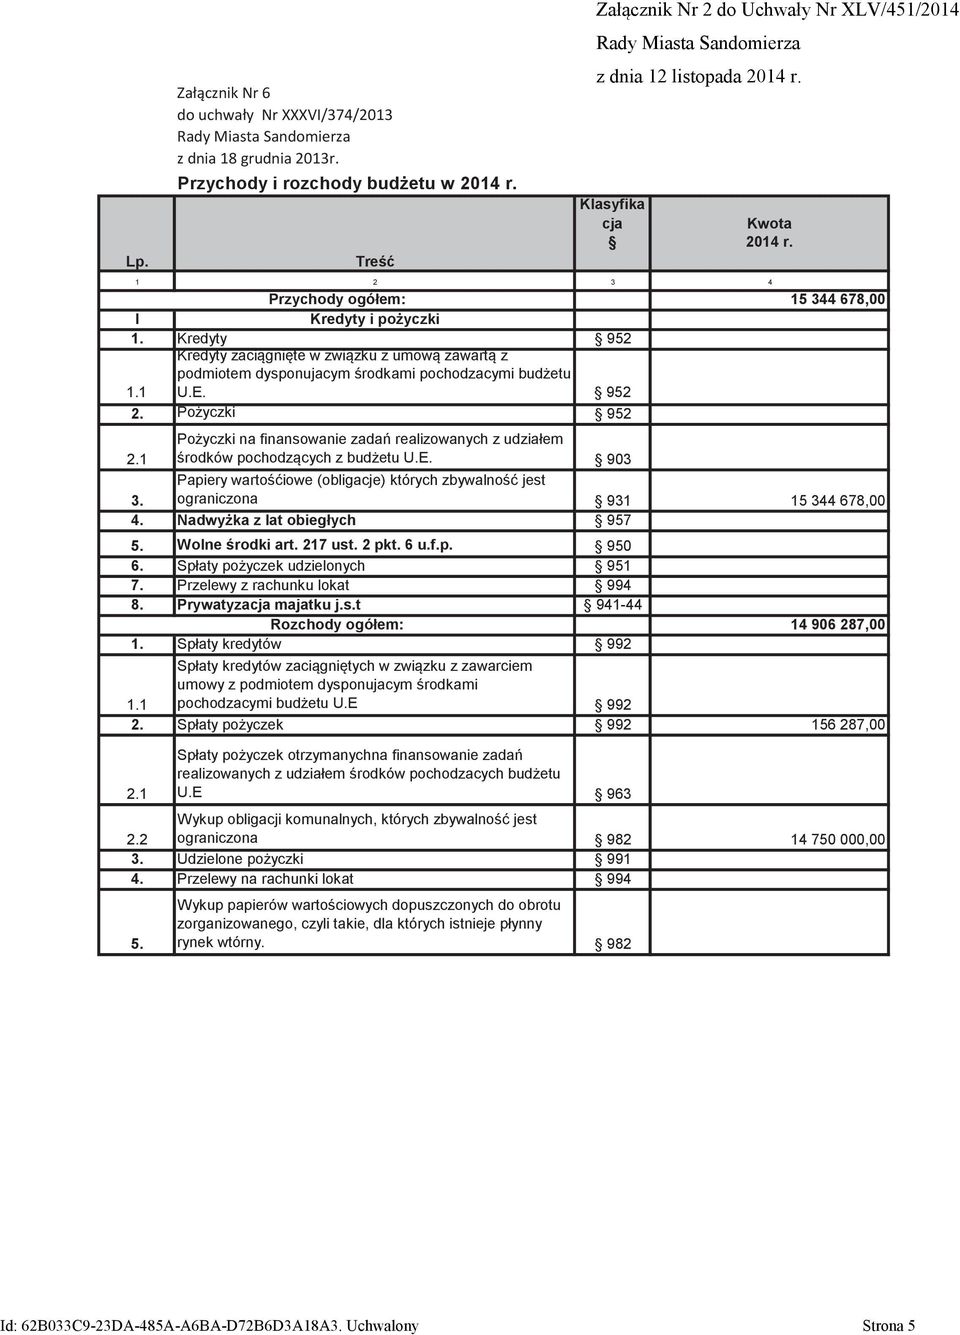 1 Pożyczki na finansowanie zadań realizowanych z udziałem środków pochodzących z budżetu U.E. 903 3. Papiery wartośćiowe (obligacje) których zbywalność jest ograniczona 931 15 344 678,00 4.